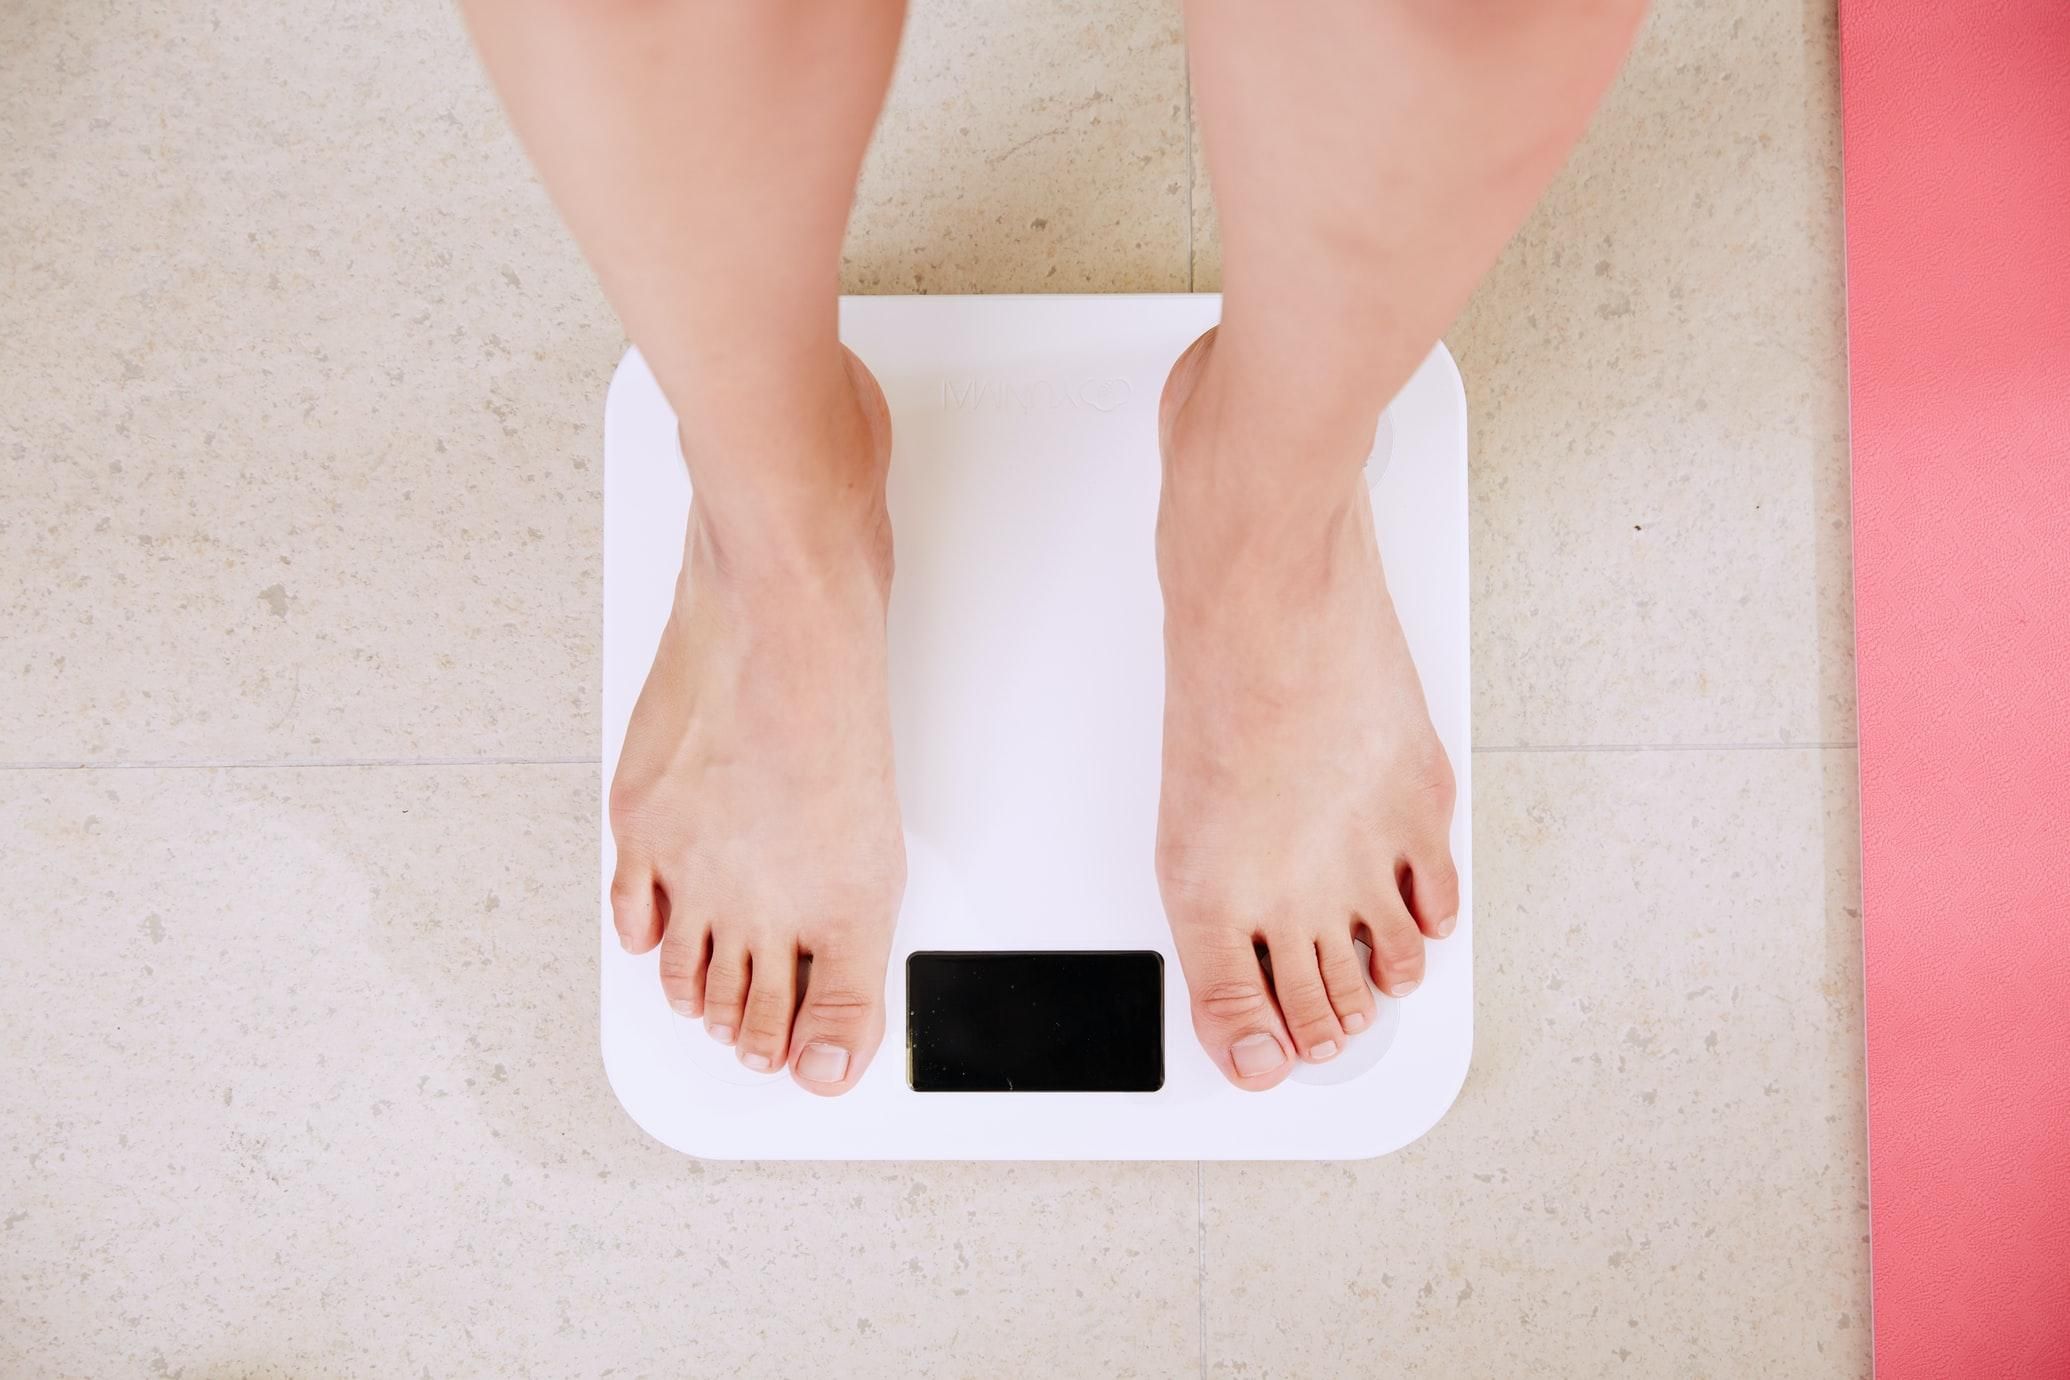 Недостаток йода и лишний вес: неочевидные причины, которые мешают похудеть - Новости Здоровье